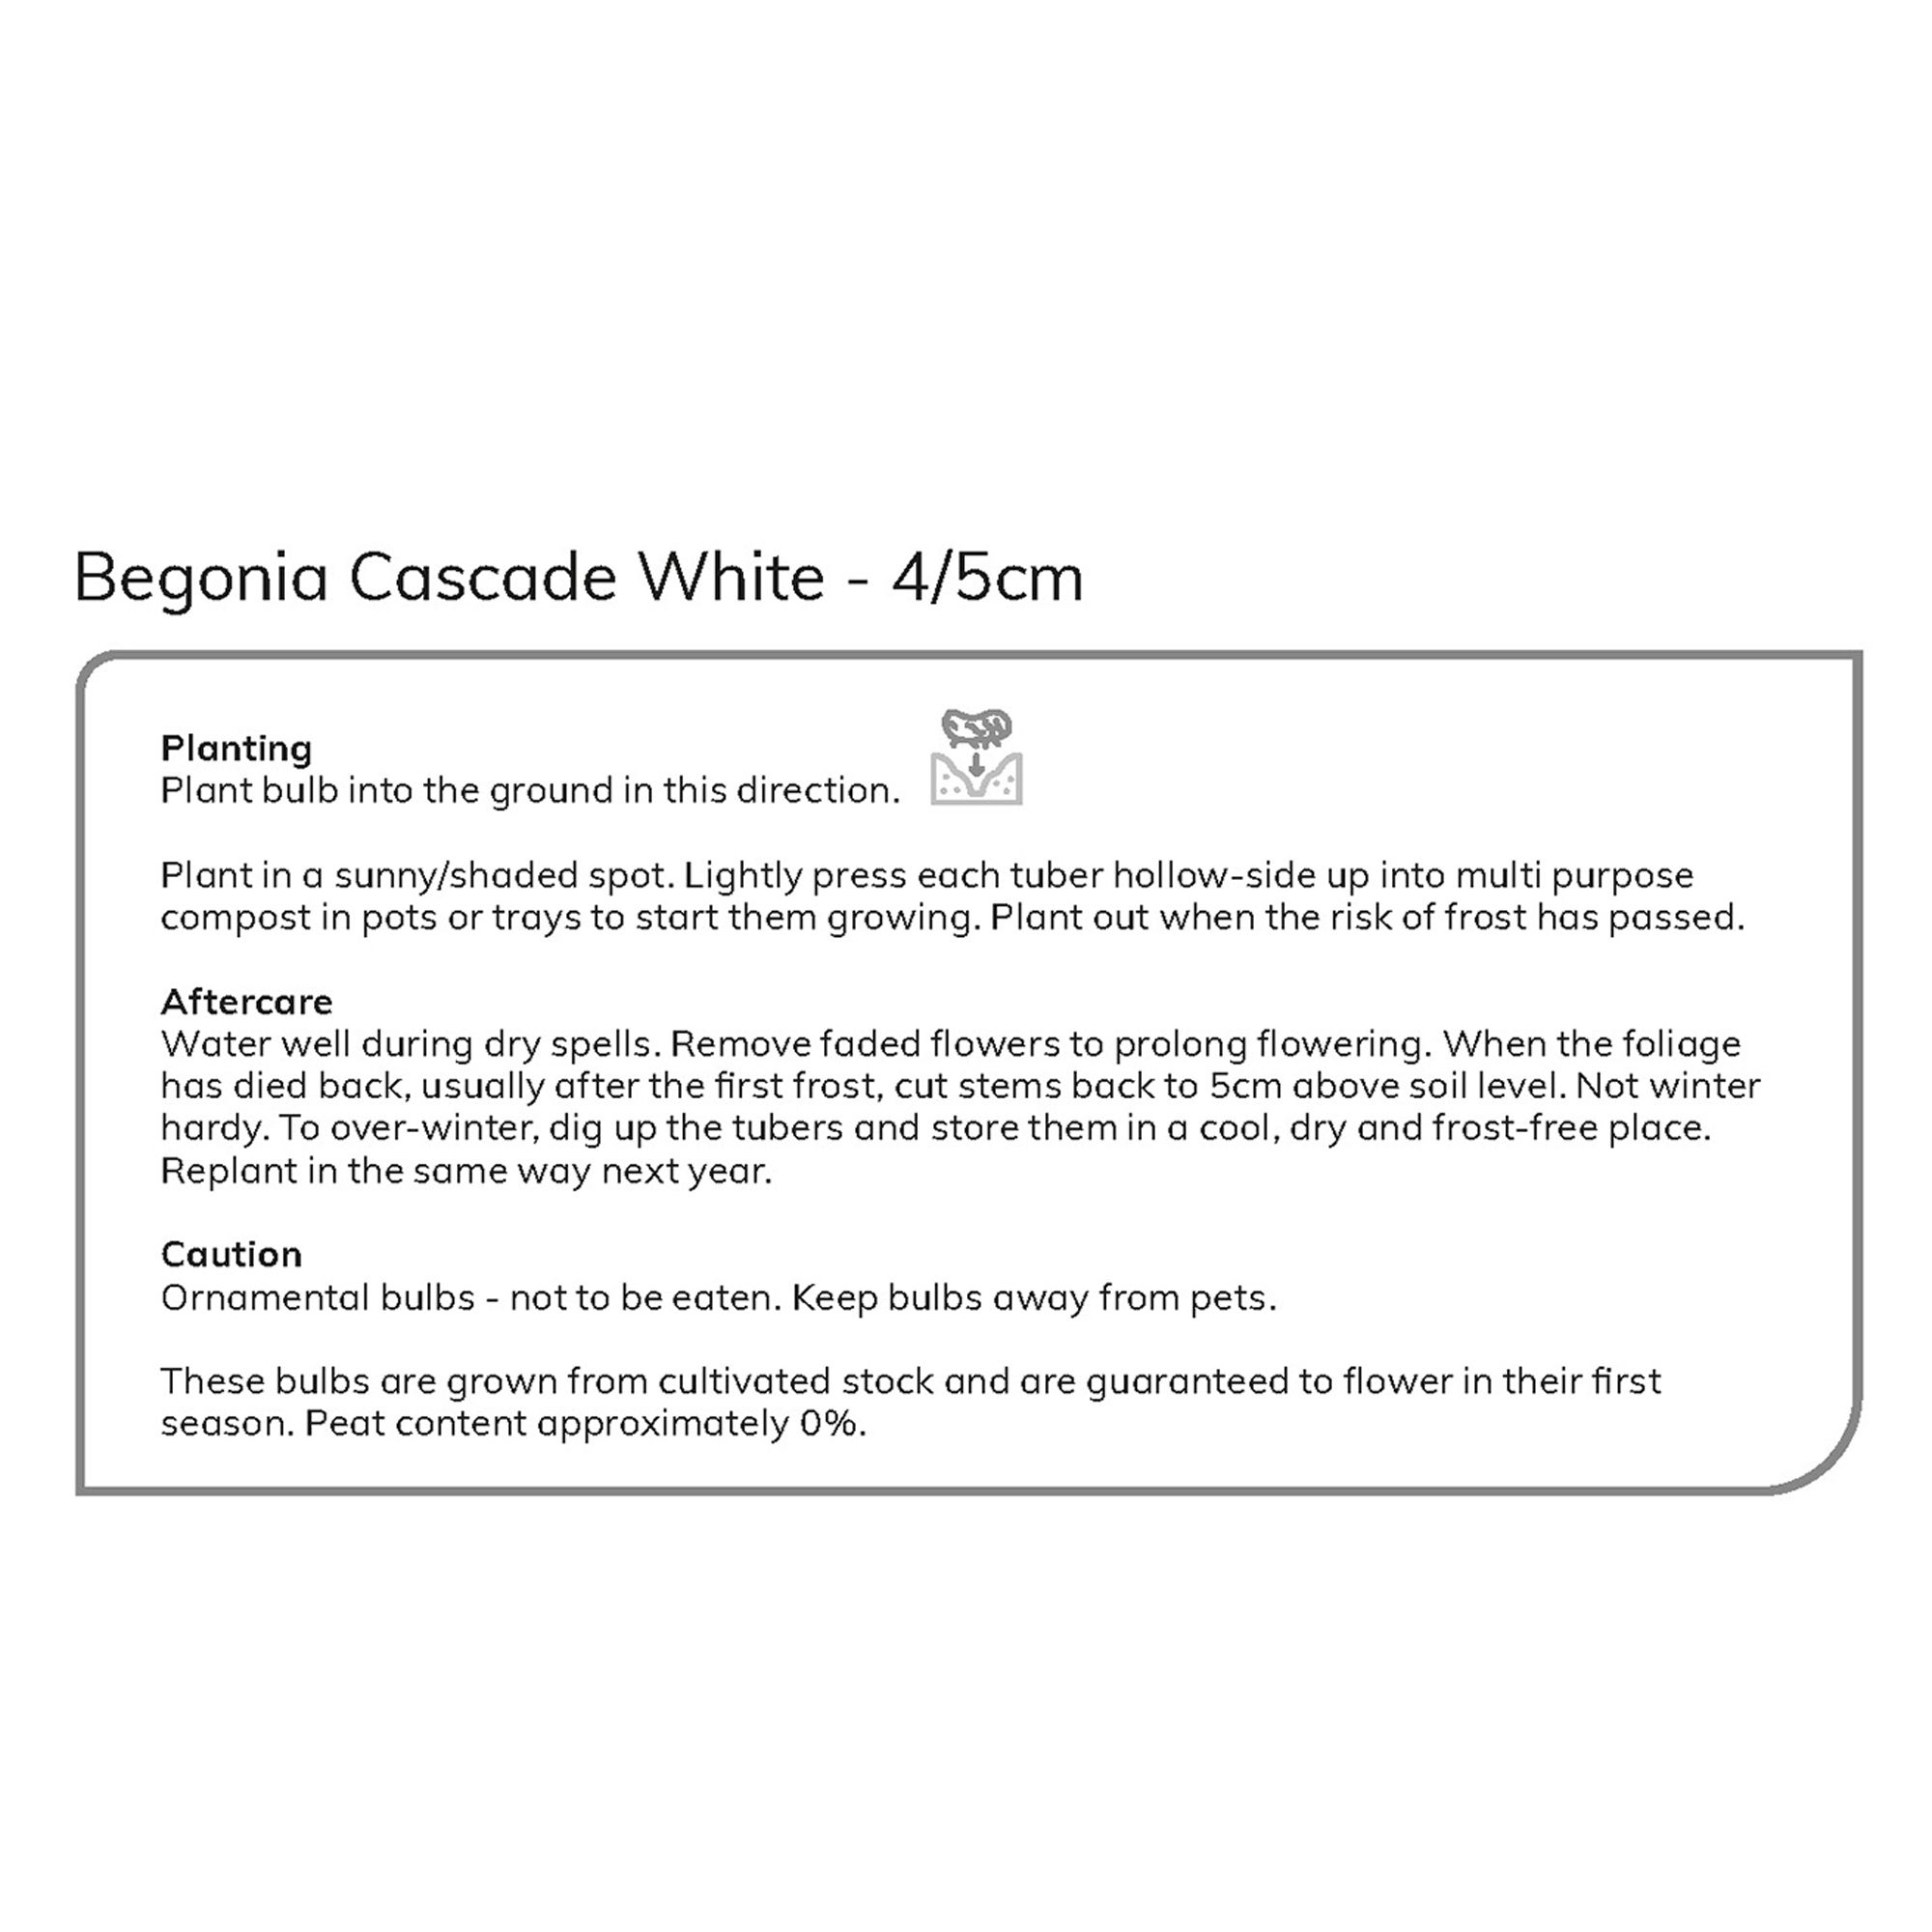 CASCADING BEGONIA WHITE